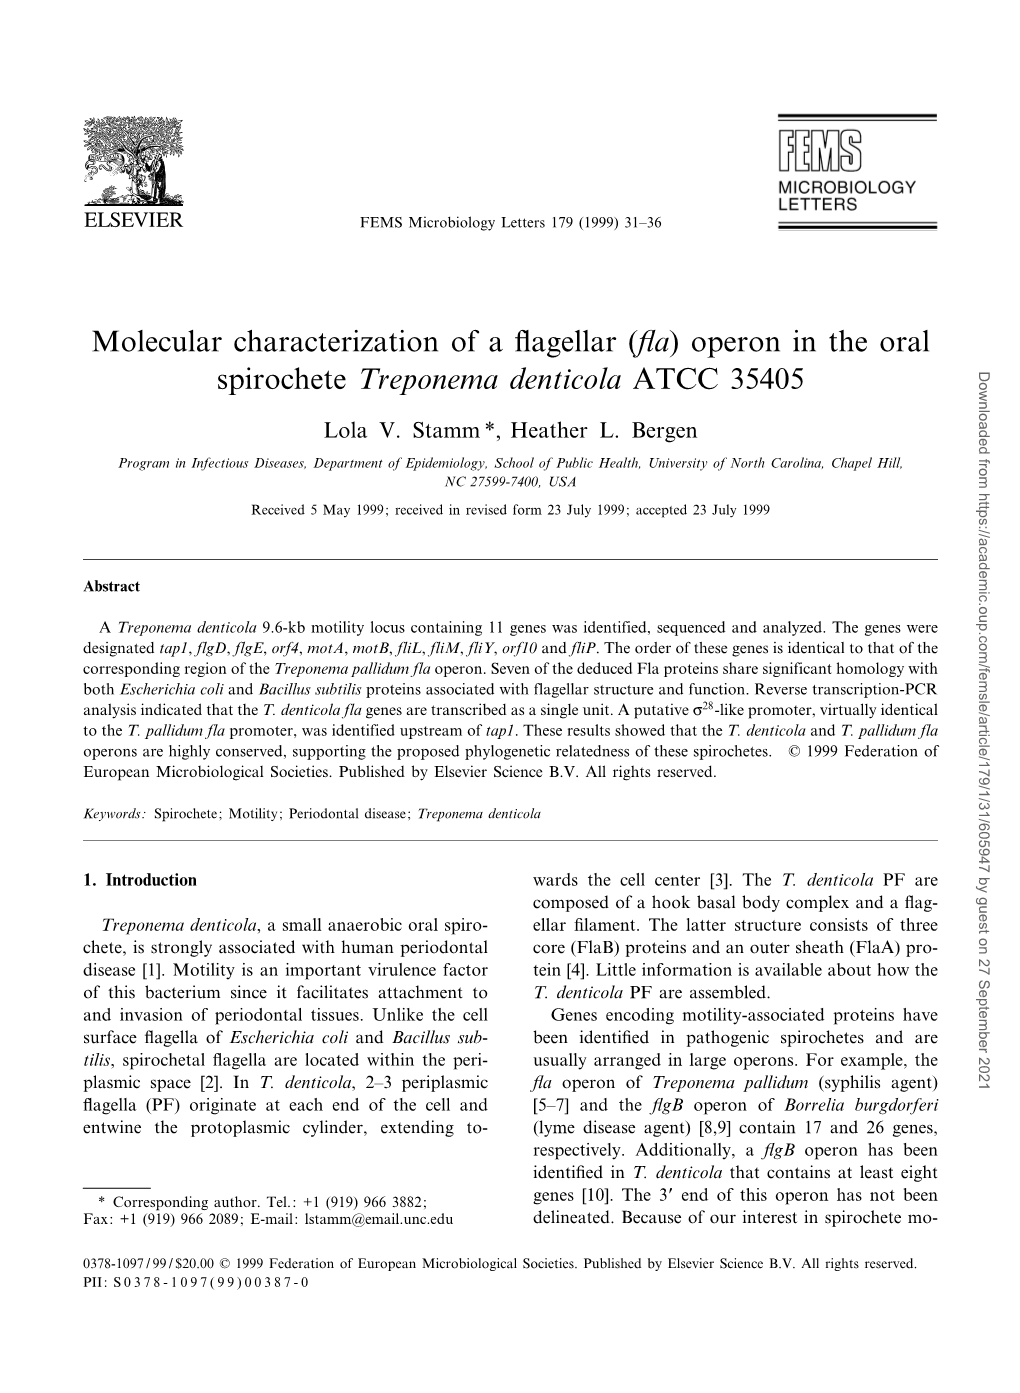 Operon in the Oral Spirochete Treponema Denticola ATCC 35405